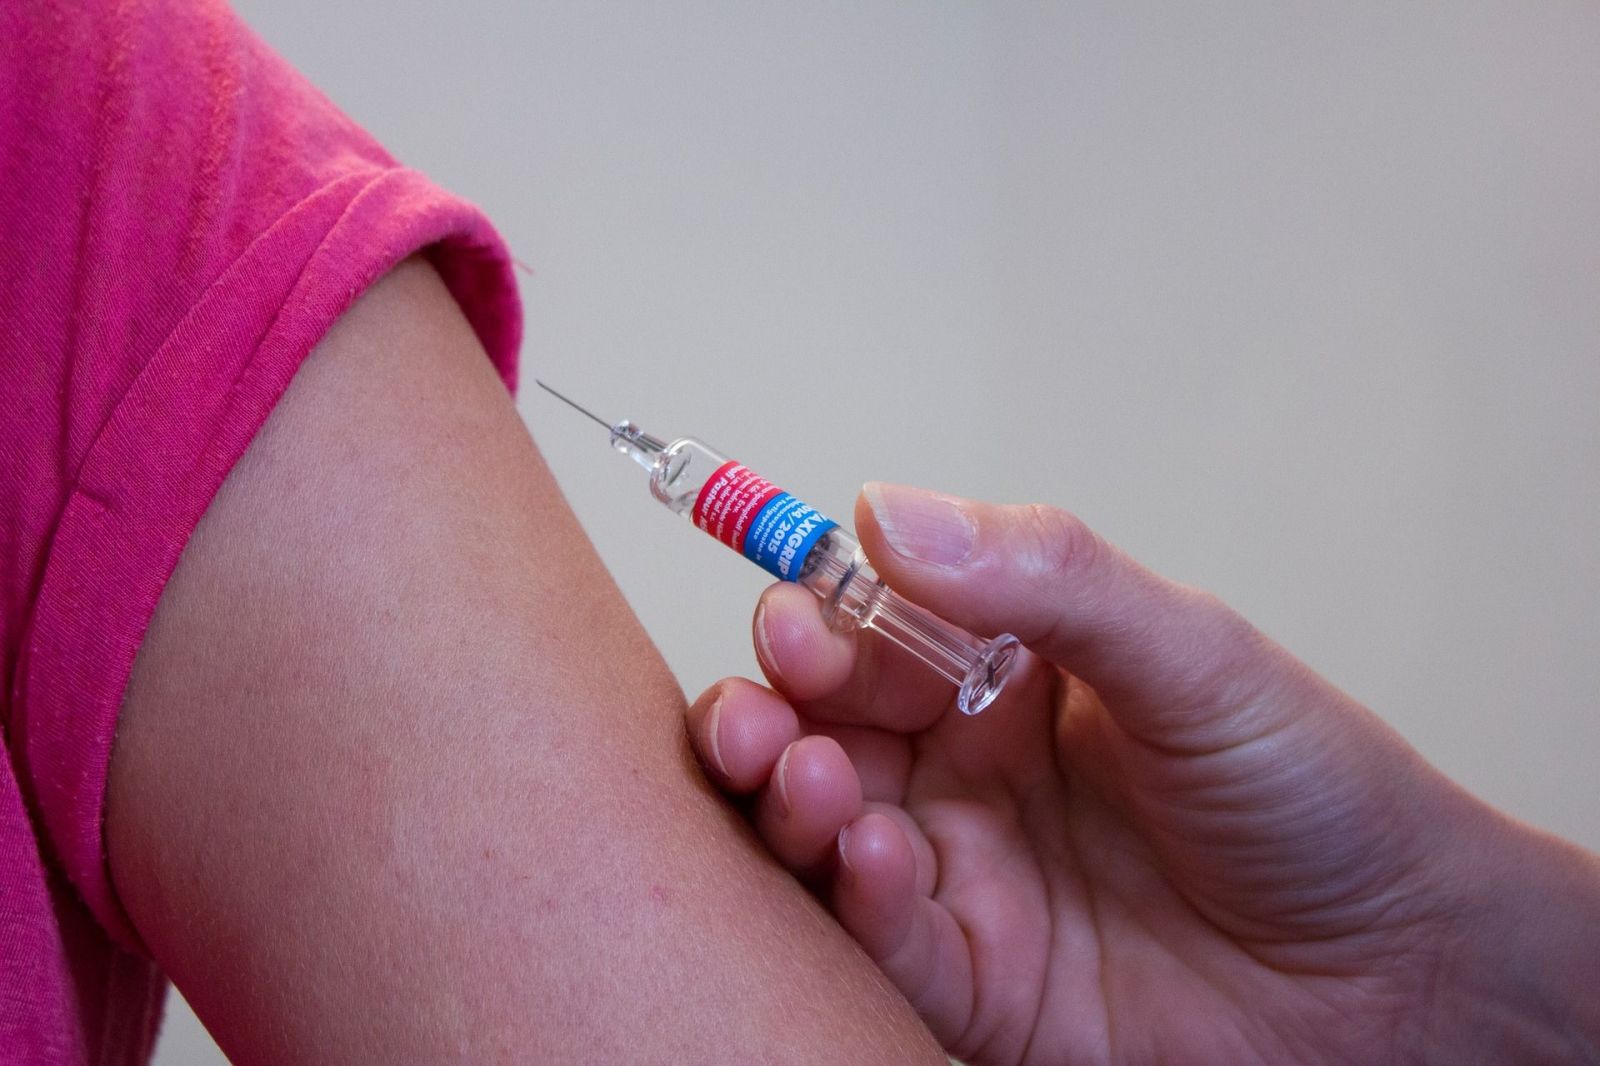 Facebook a Instagram začínajú bojovať za to, aby sa nešírili bludy o vakcínach a očkovaní. Dohodli sa s WHO